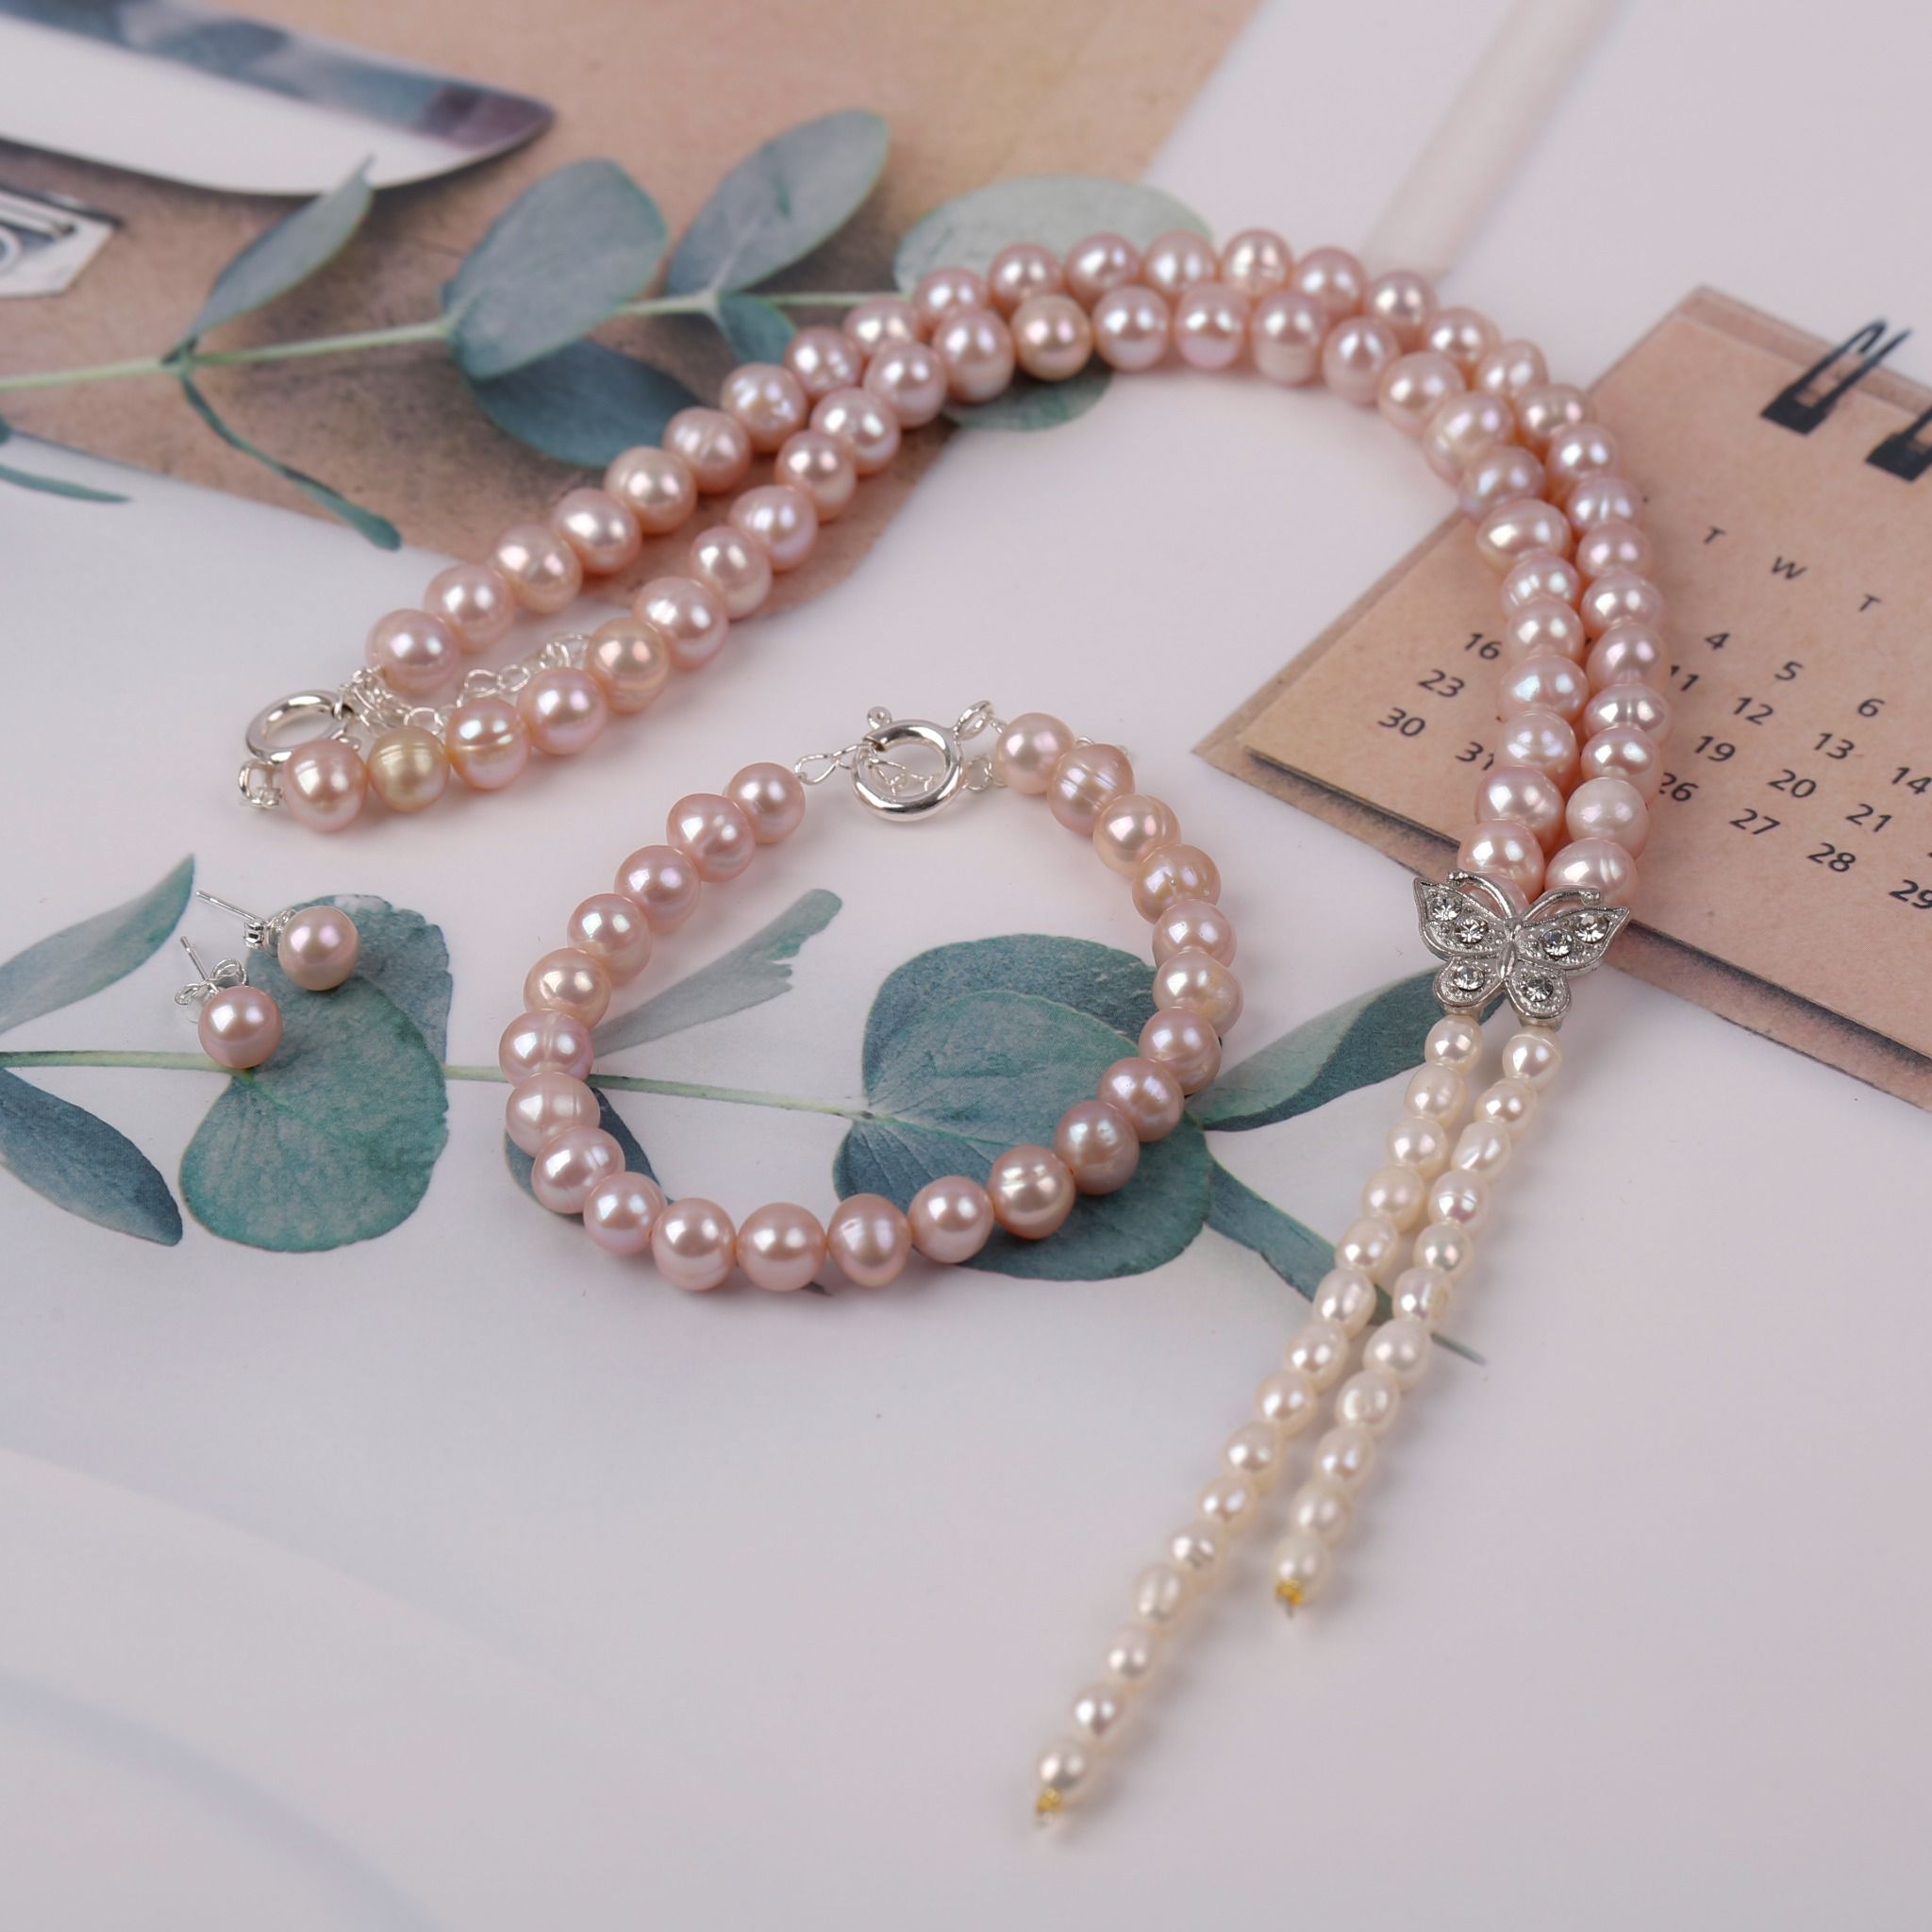  Bộ trang sức Vòng cổ-Vòng tay-Nhẫn-Hoa tai Ngọc trai hồng sang trọng, tinh tế thương hiệu Opal 